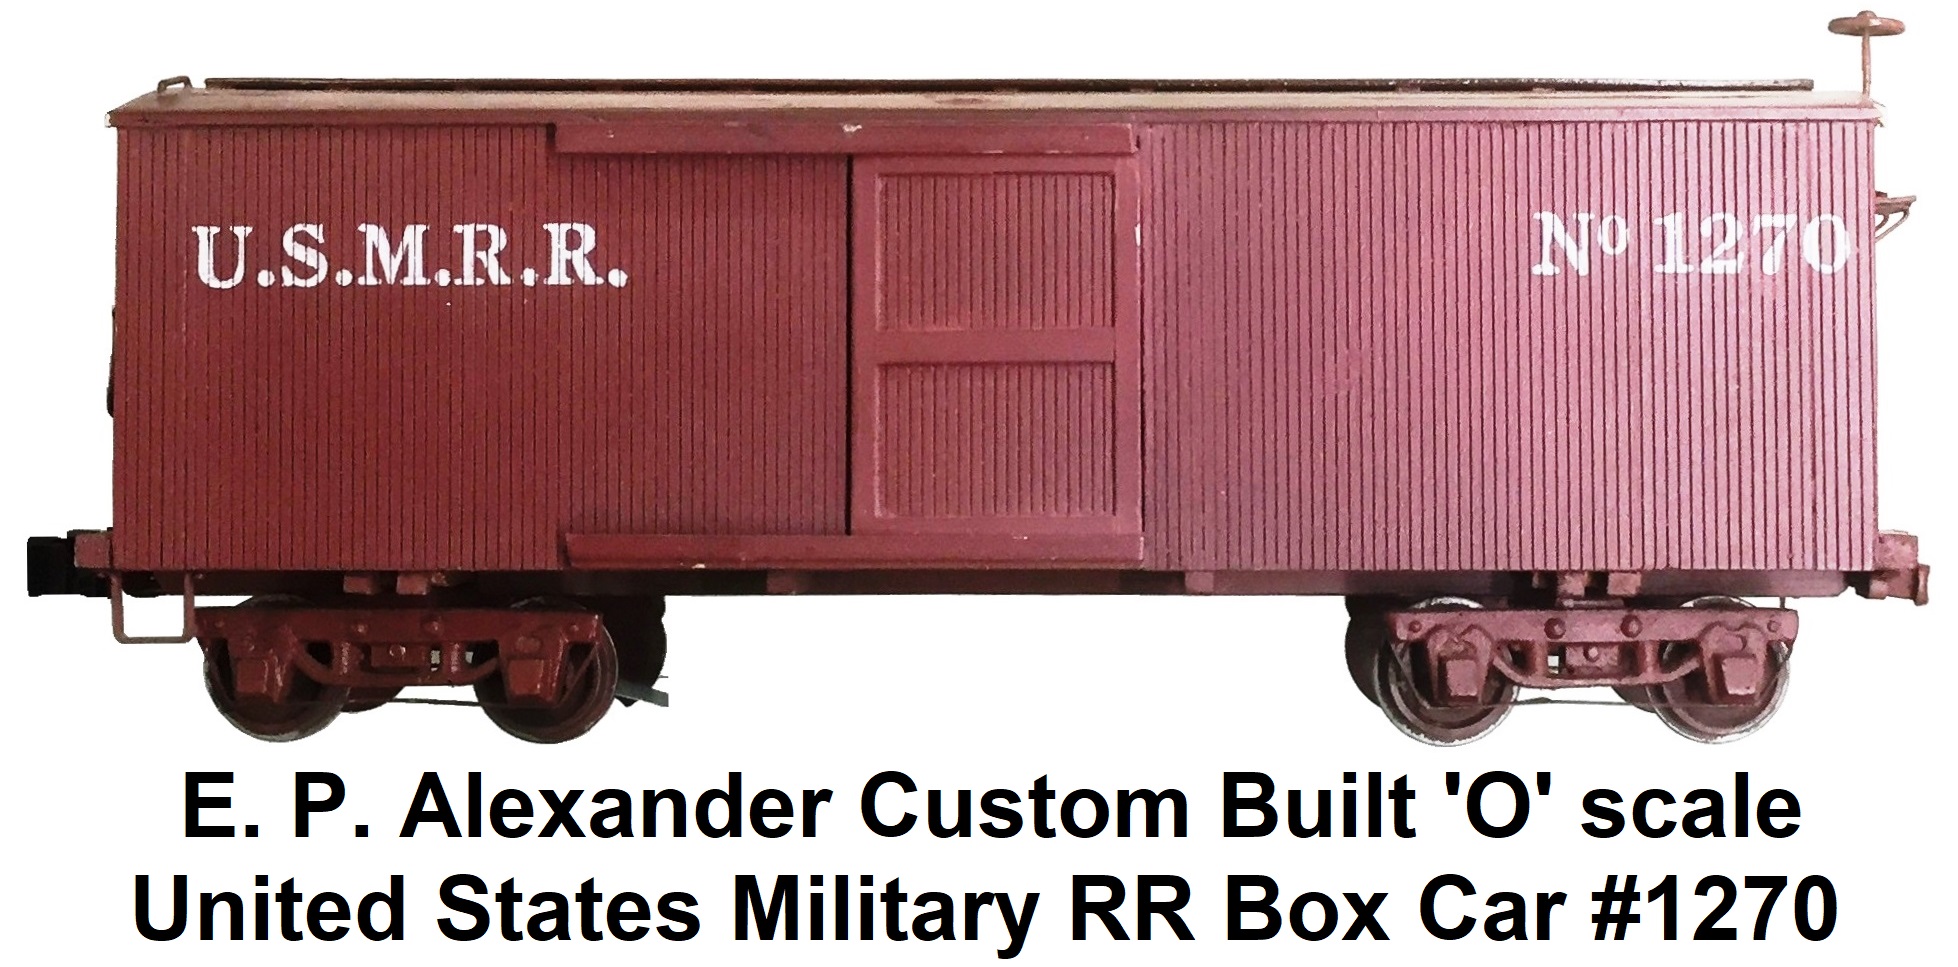 E. P. Alexander custom built 'O' scale U.S.M.R.R. #1270 box car